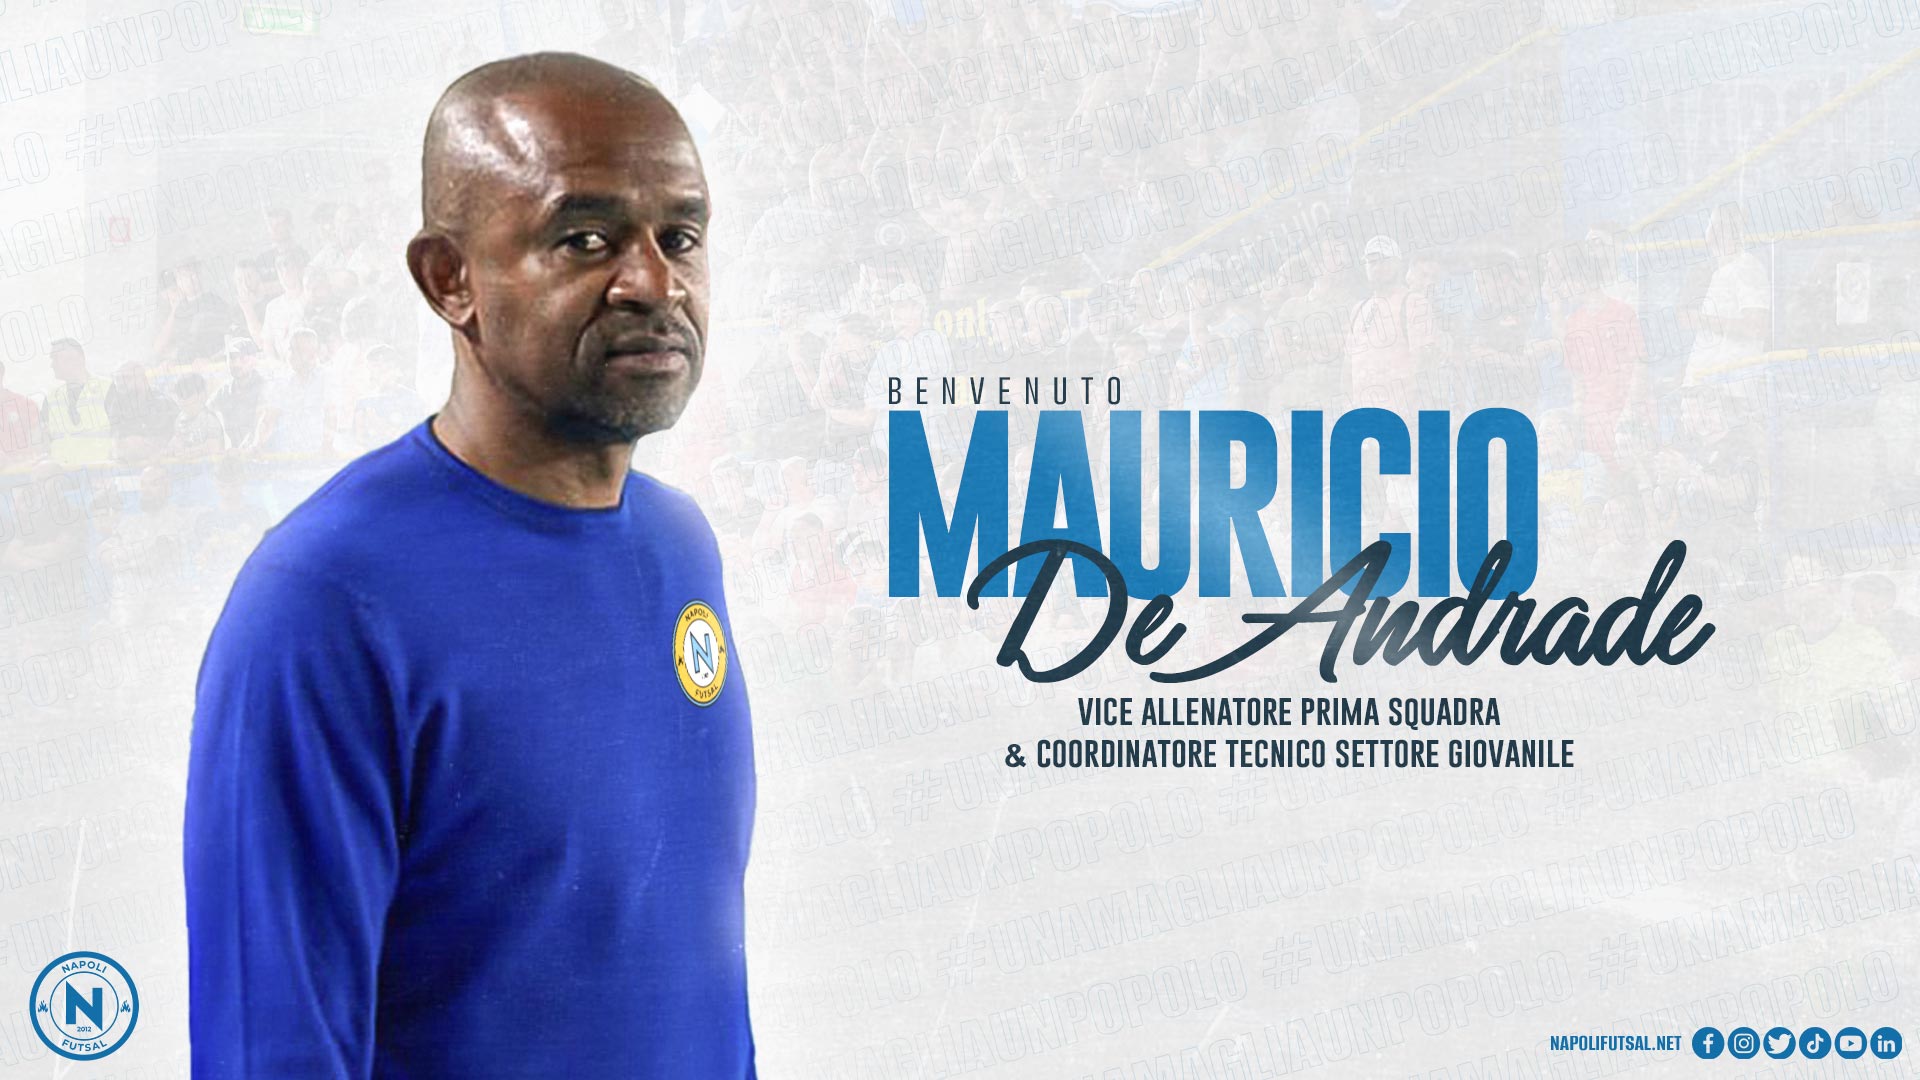 Mauricio De Andrade vice allenatore e coordinatore tecnico settore giovanile del Napoli: “Non vedo l’ora, Colini coach di prestigio”